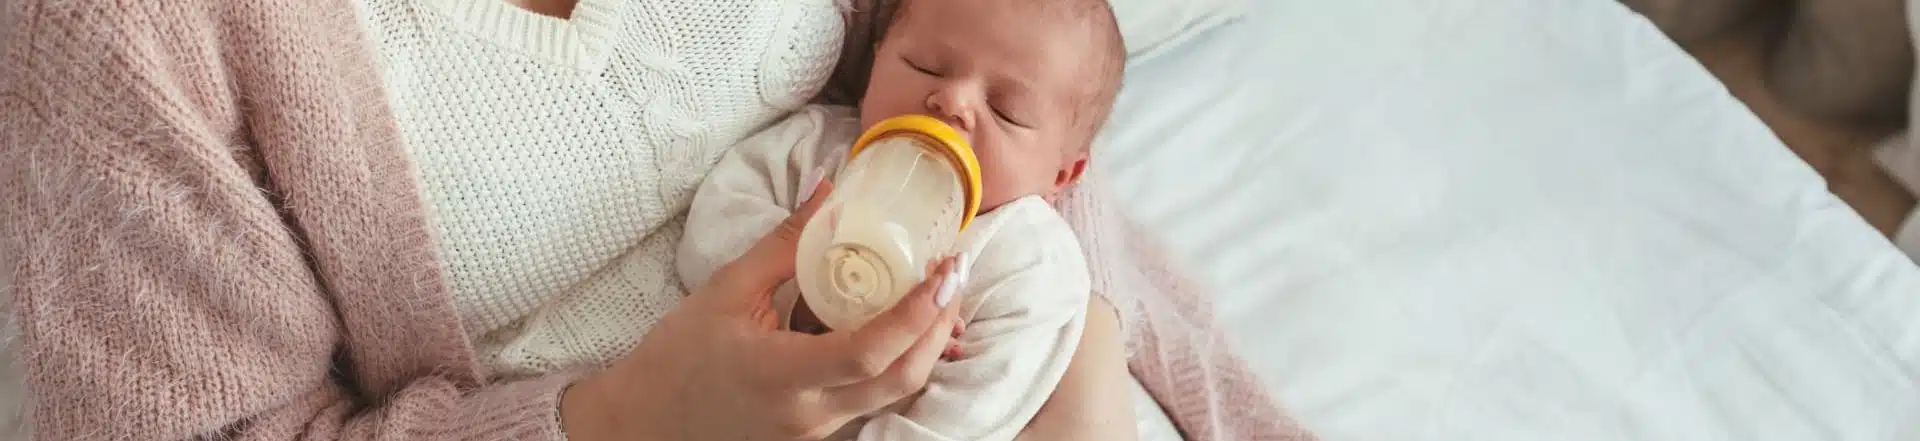 אמא מאכילה את תינוקה בבקבוק חלב